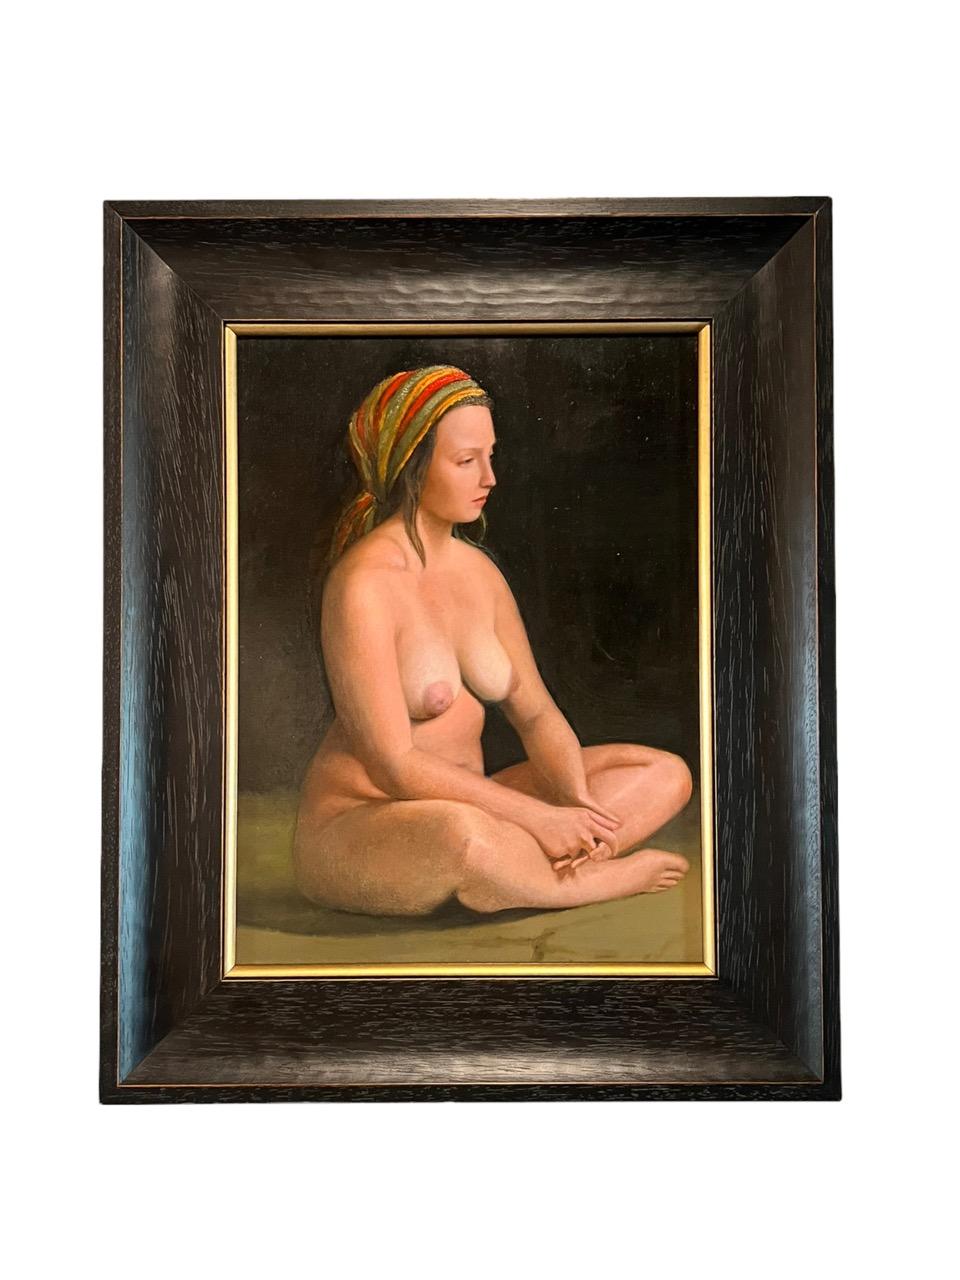 Peinture à l'huile sur panneau dur de l'artiste contemporain argentin Diego Cabral en 2021 représentant une femme nue réaliste. L'artiste aime dépeindre et embrasser la beauté réelle des corps naturels des femmes. 

Un seul tableau, l'autre